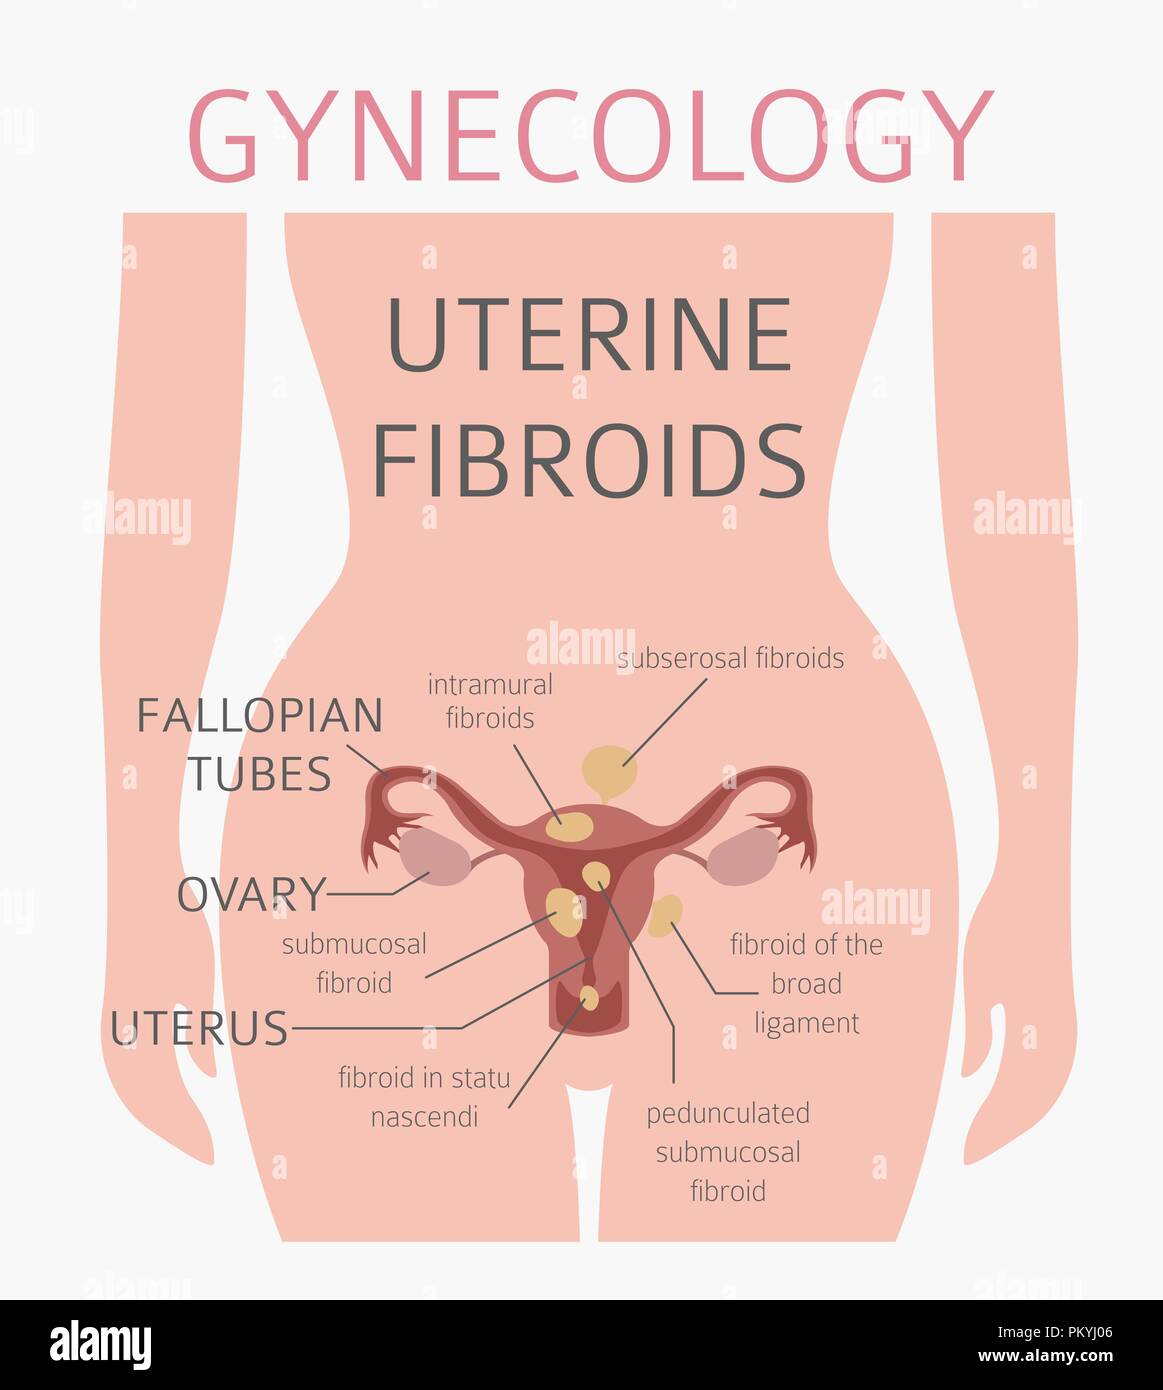 Les fibromes utérins. Ginecological maladie médicale chez les femmes infographie. Vector illustration Illustration de Vecteur